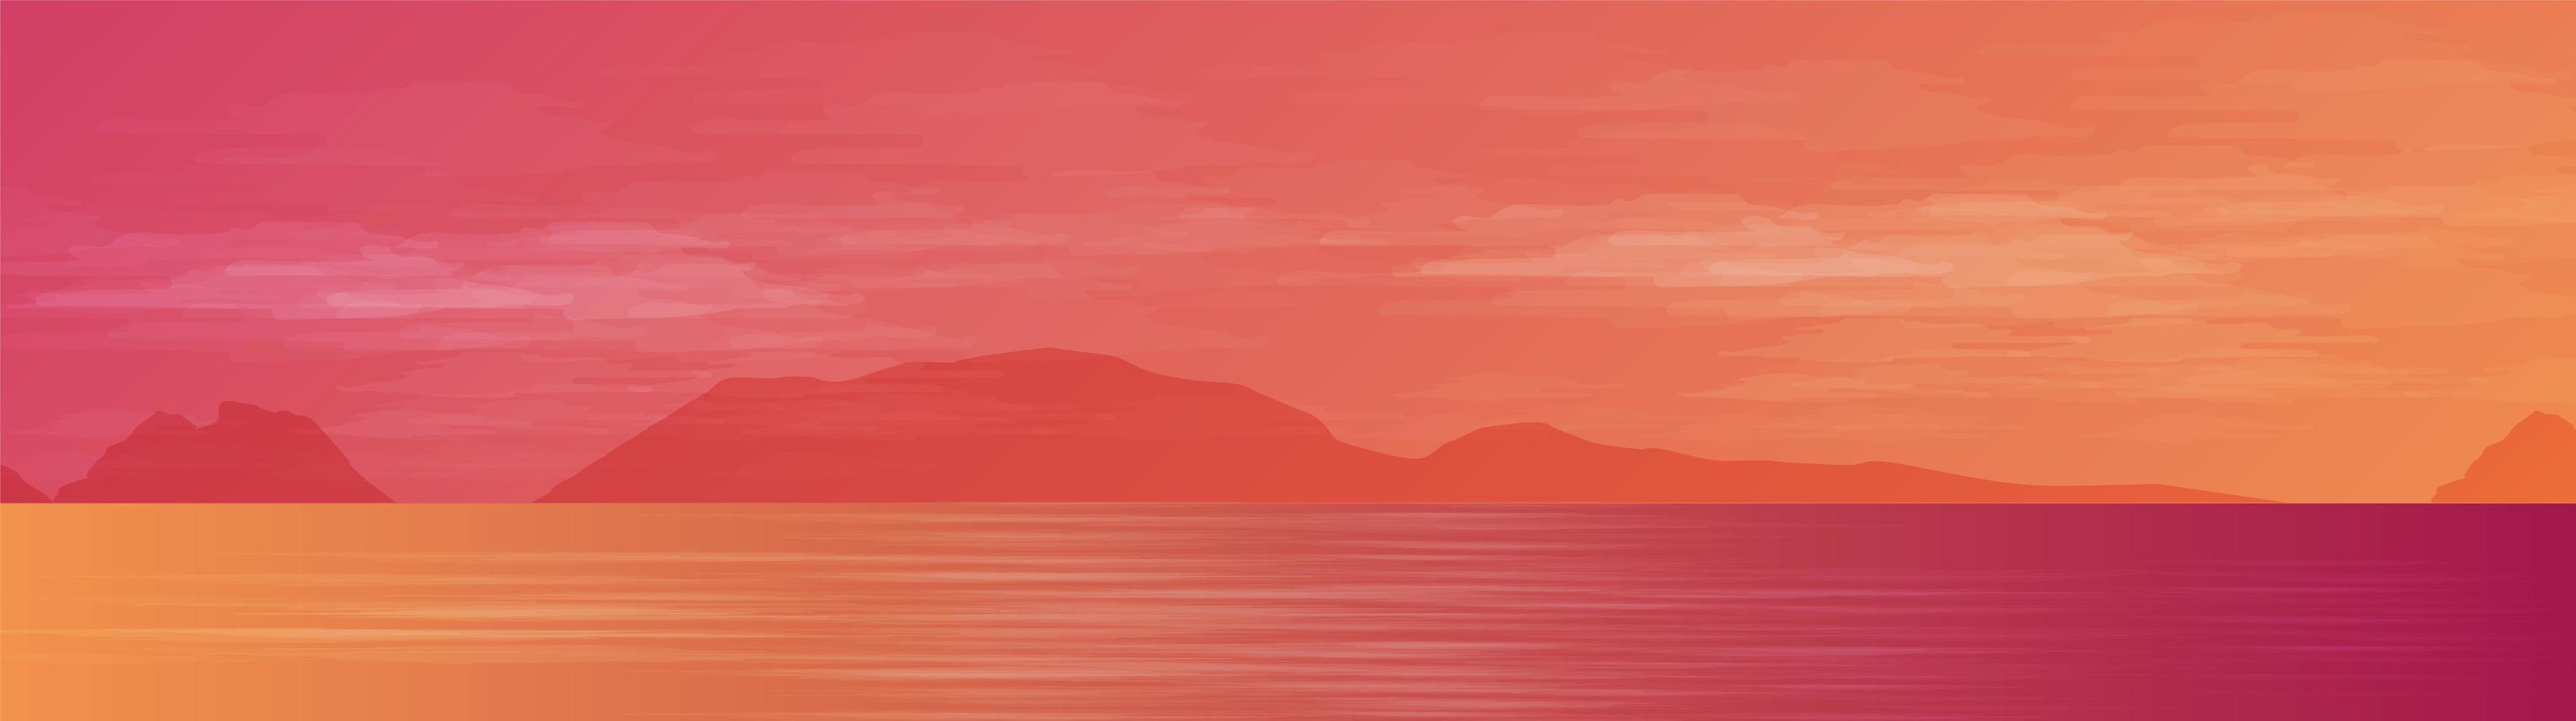 Panorama schönes Meer auf Landschaftshintergrund, Sonnenschein und Sonnenuntergang-Konzeptentwurf vektor